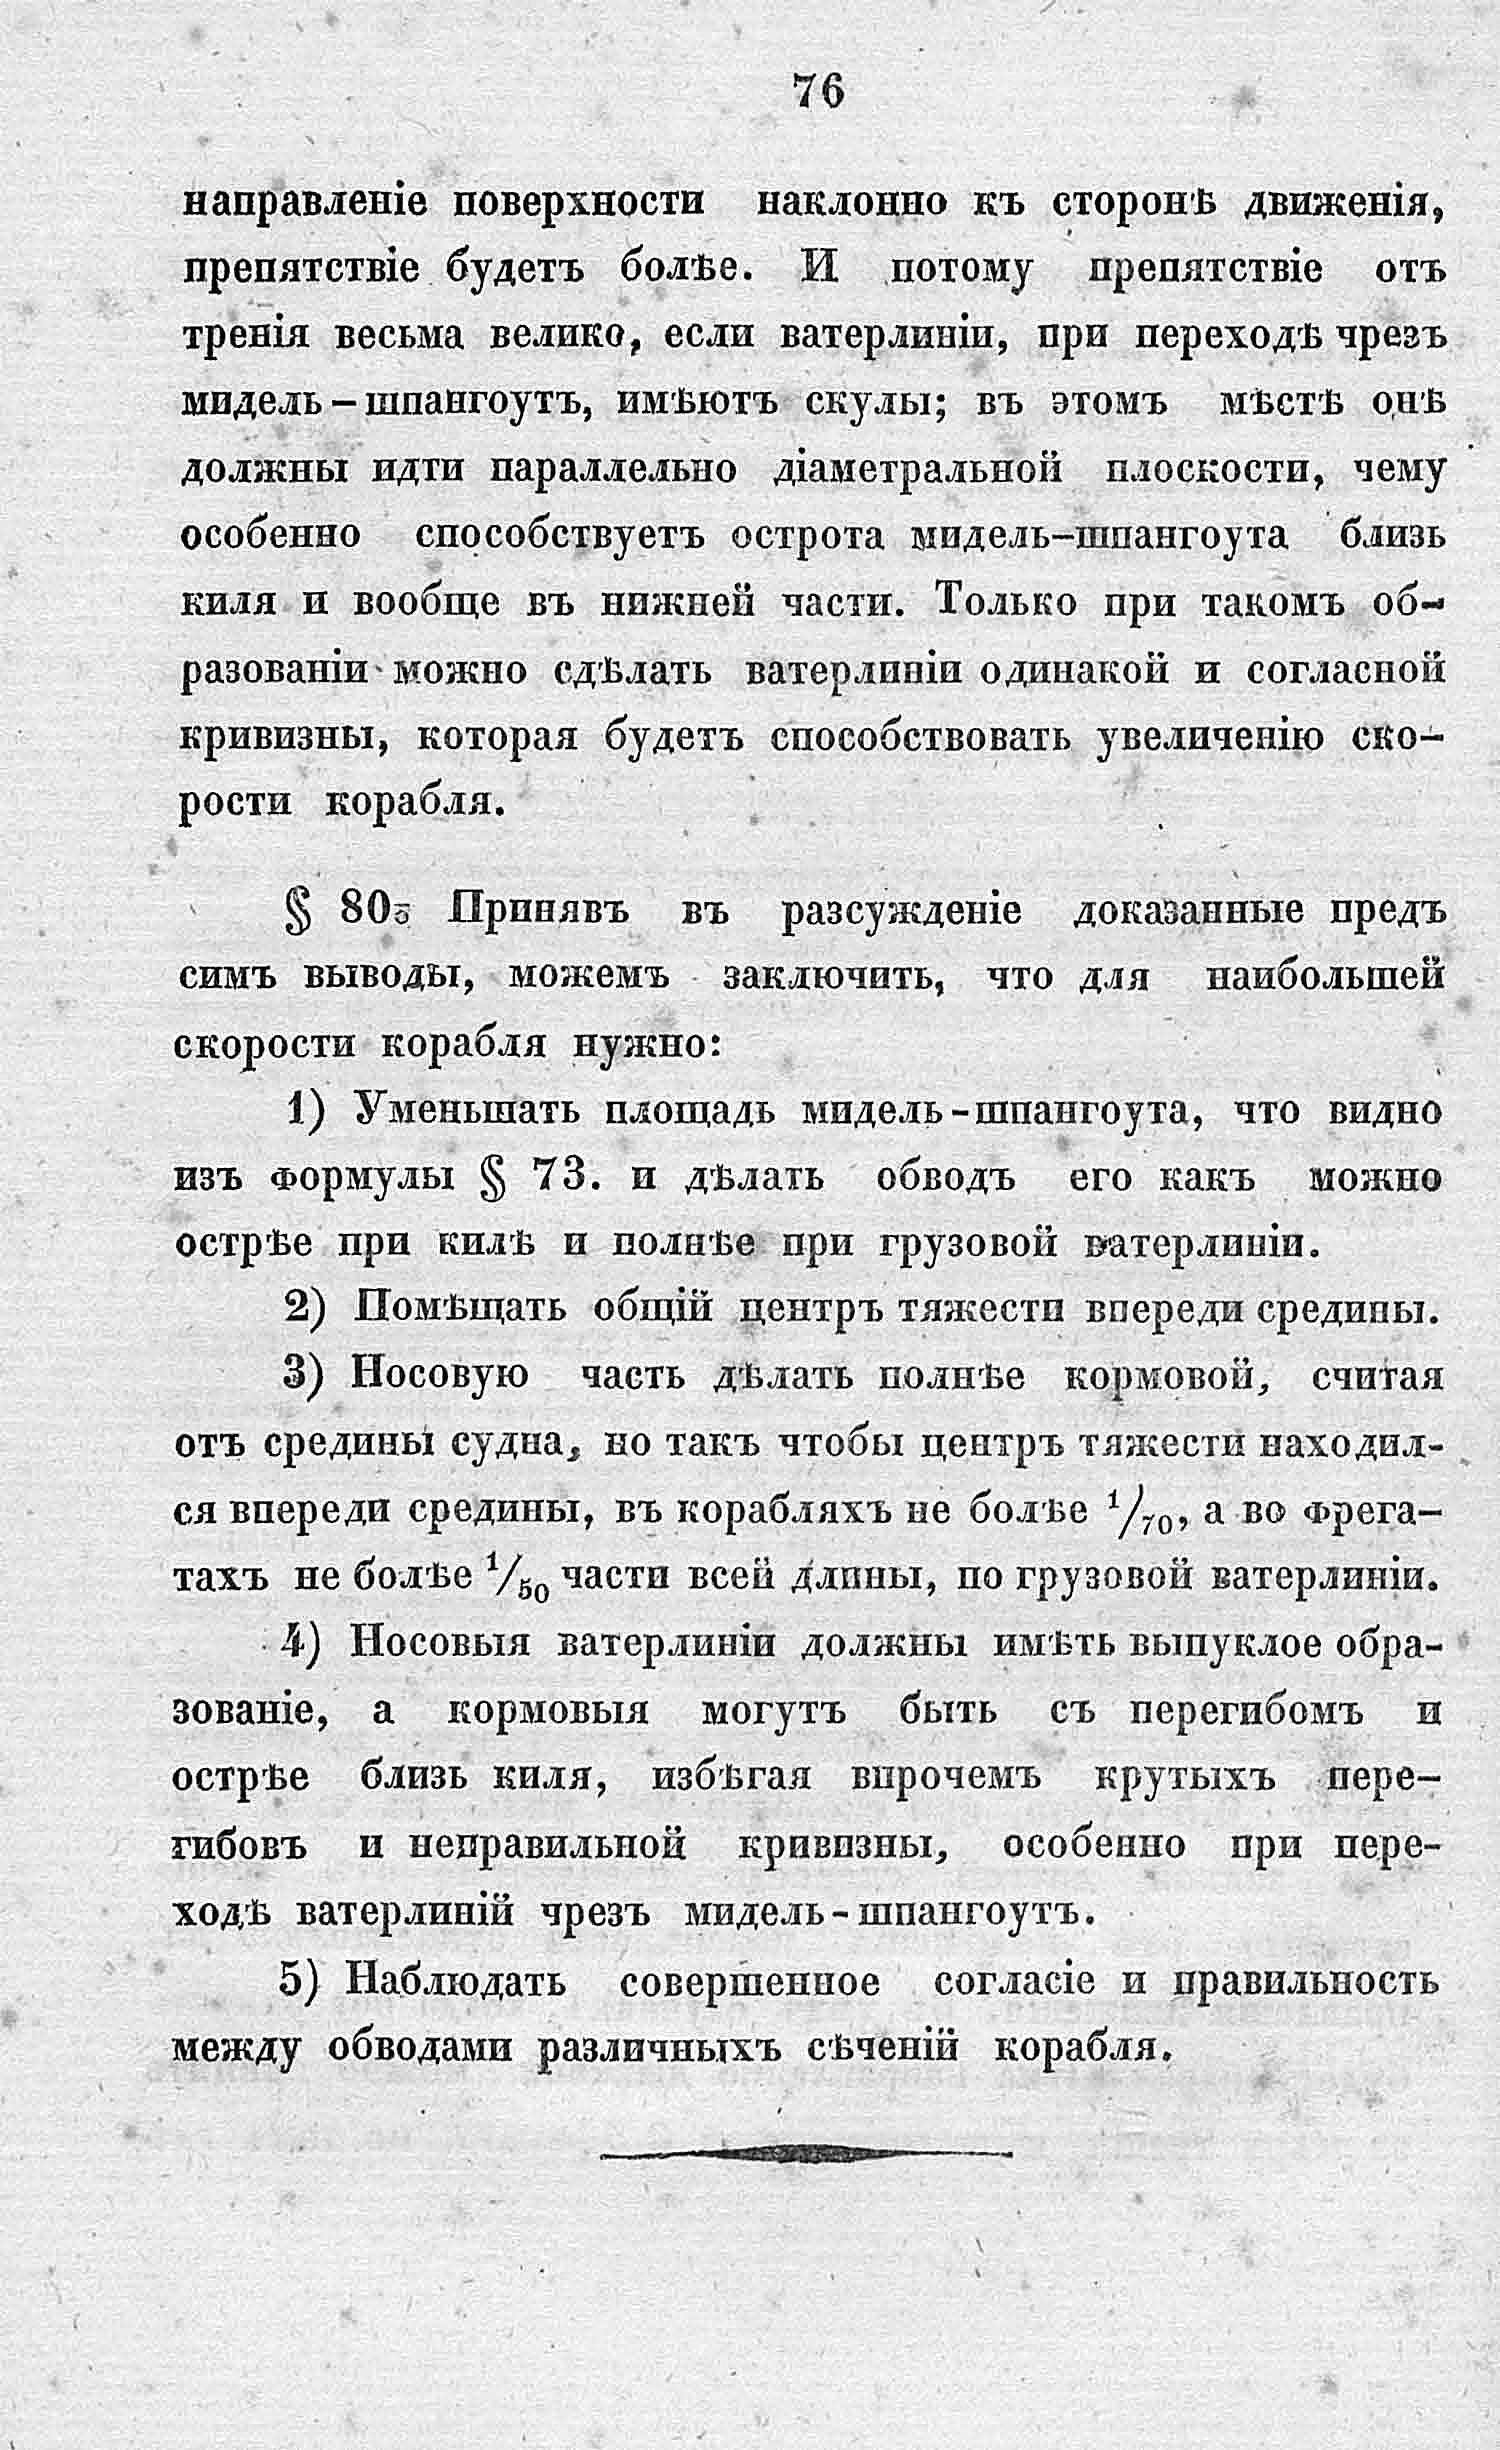 Страницы из Okunev- Краткое руководство -1841.jpg